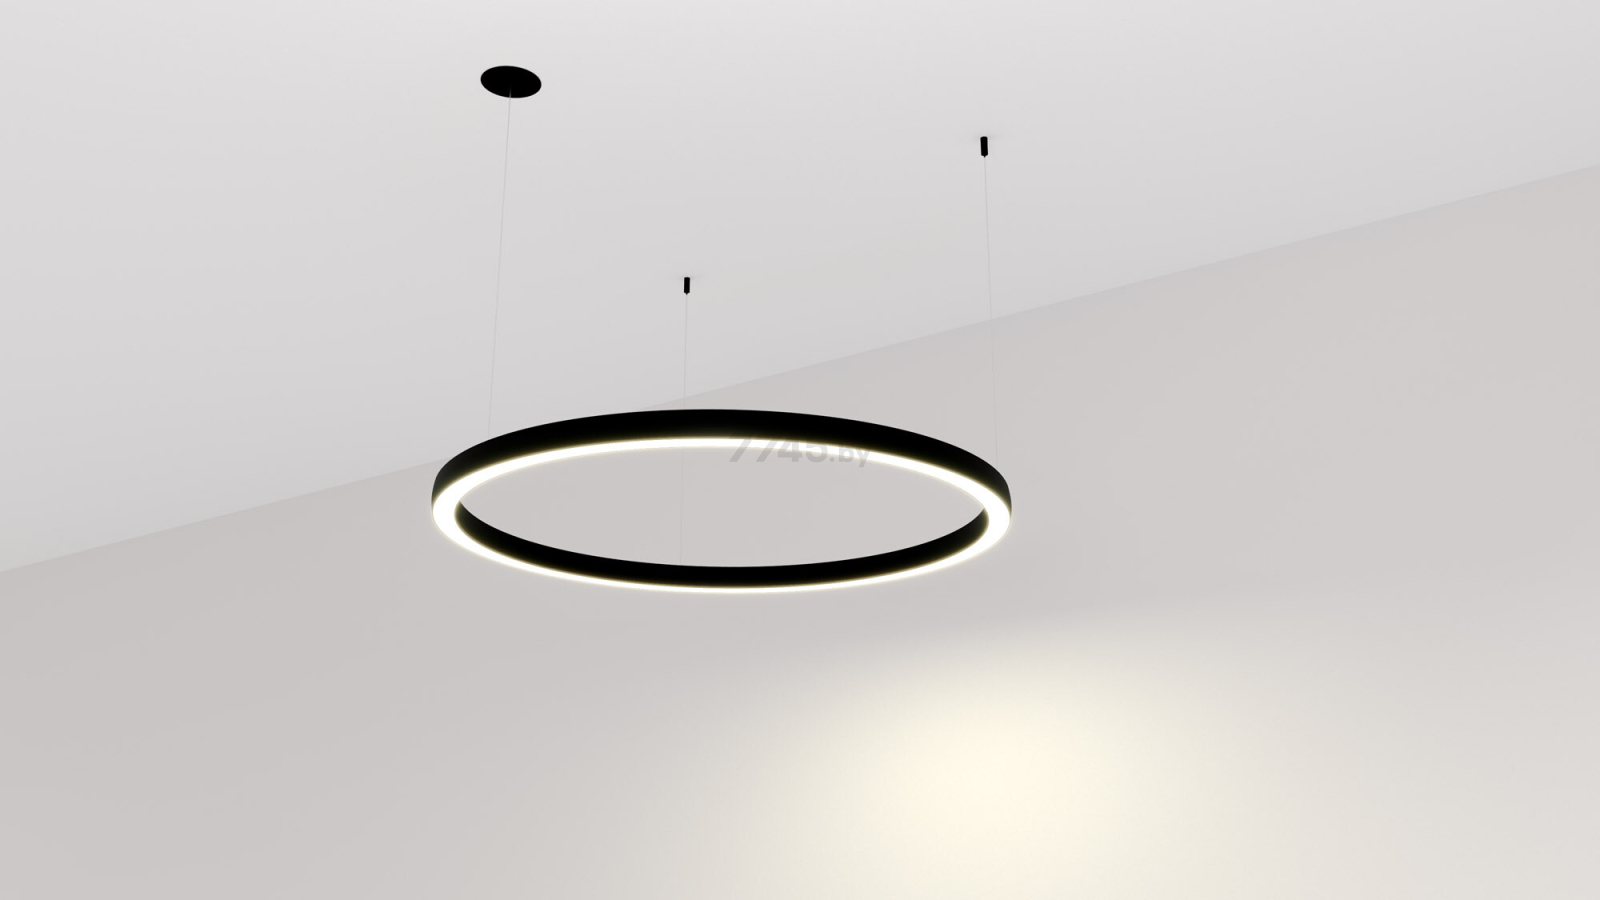 Светильник подвесной светодиодный 75 Вт 4000К BYLED Halo-1535 черный (008177) - Фото 2